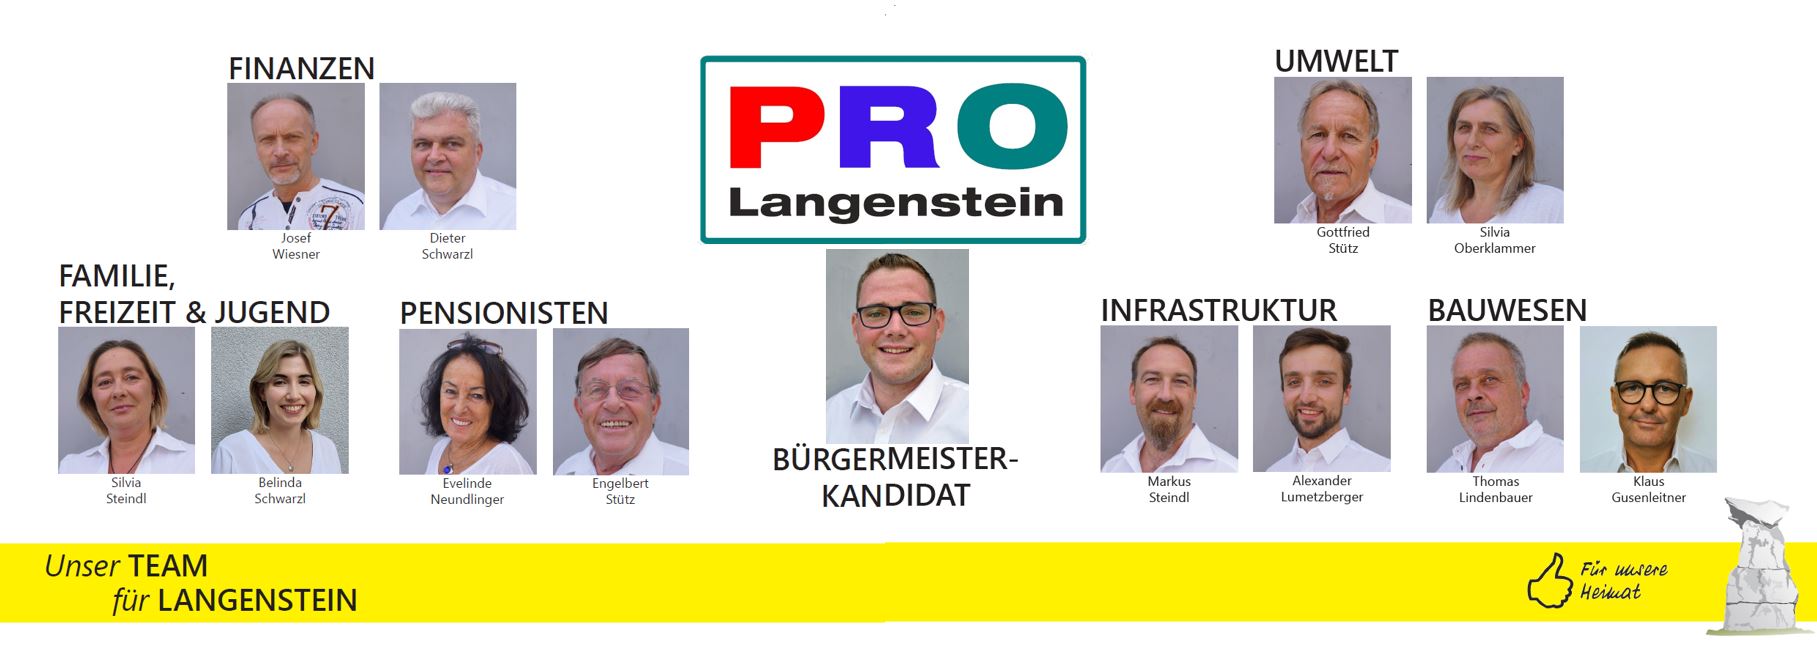 PRO - Unser Team für Langenstein